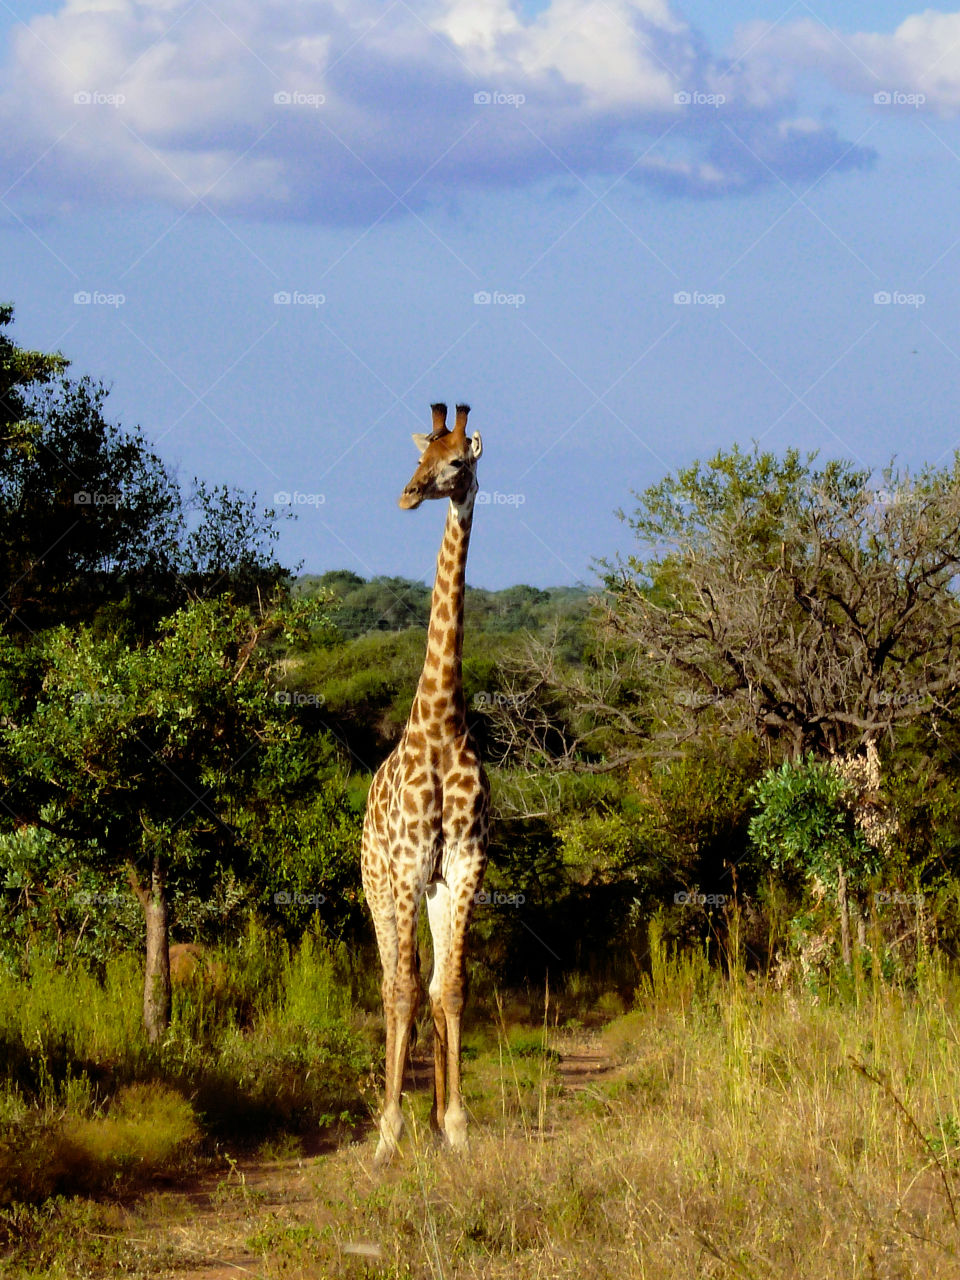 Giraffe standing in grass